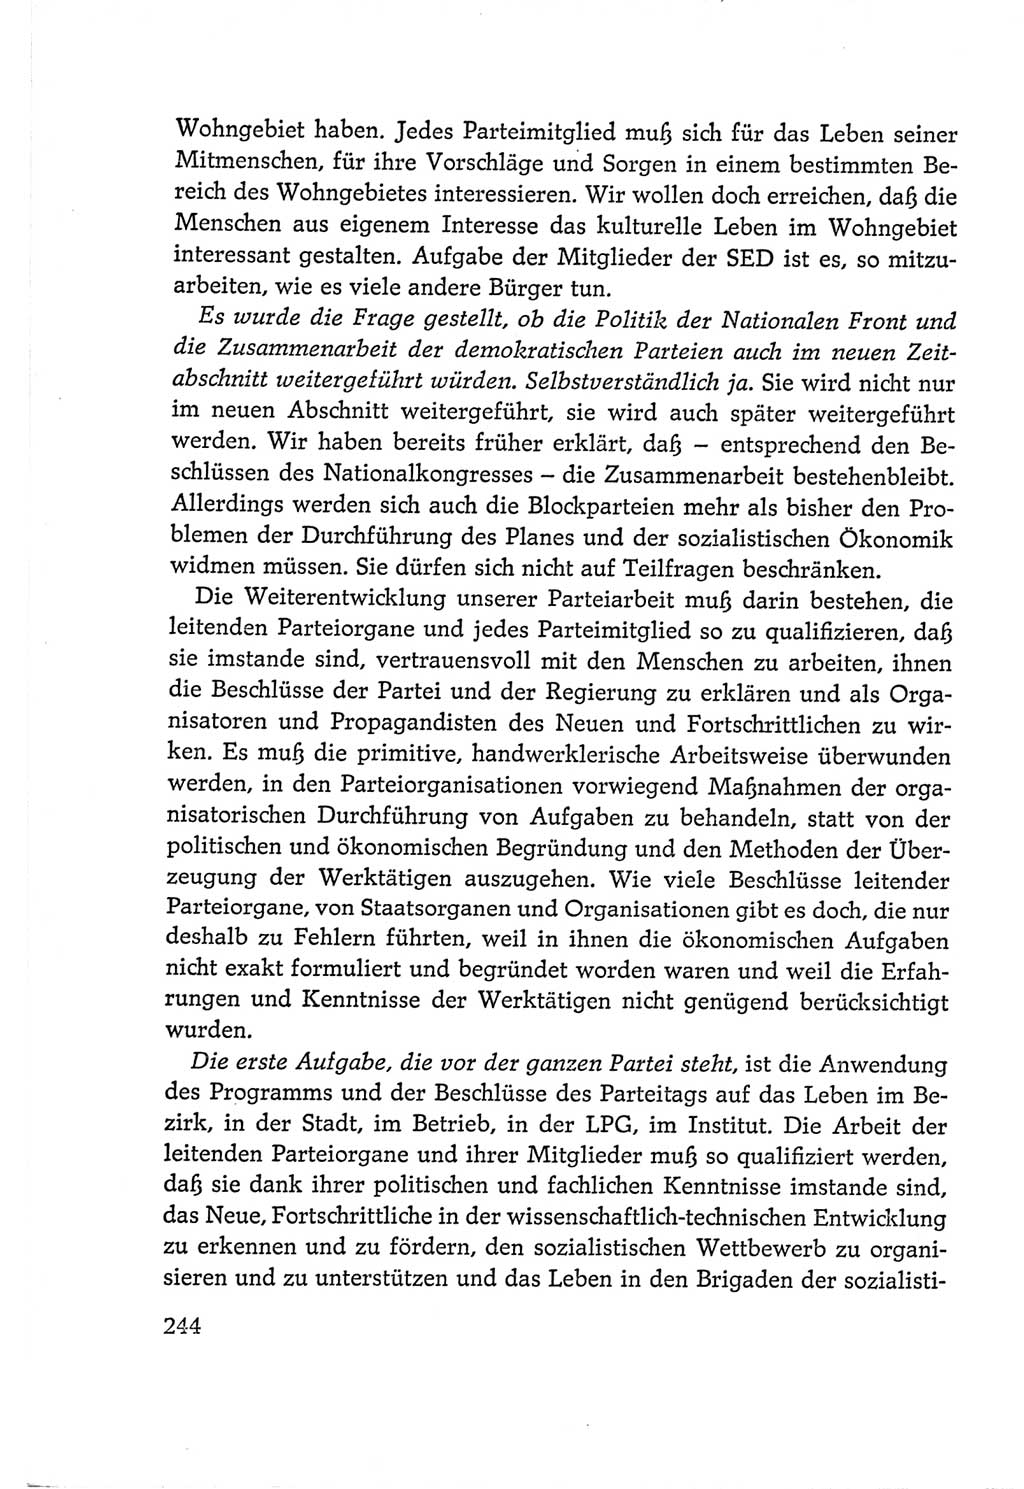 Protokoll der Verhandlungen des Ⅵ. Parteitages der Sozialistischen Einheitspartei Deutschlands (SED) [Deutsche Demokratische Republik (DDR)] 1963, Band Ⅰ, Seite 244 (Prot. Verh. Ⅵ. PT SED DDR 1963, Bd. Ⅰ, S. 244)